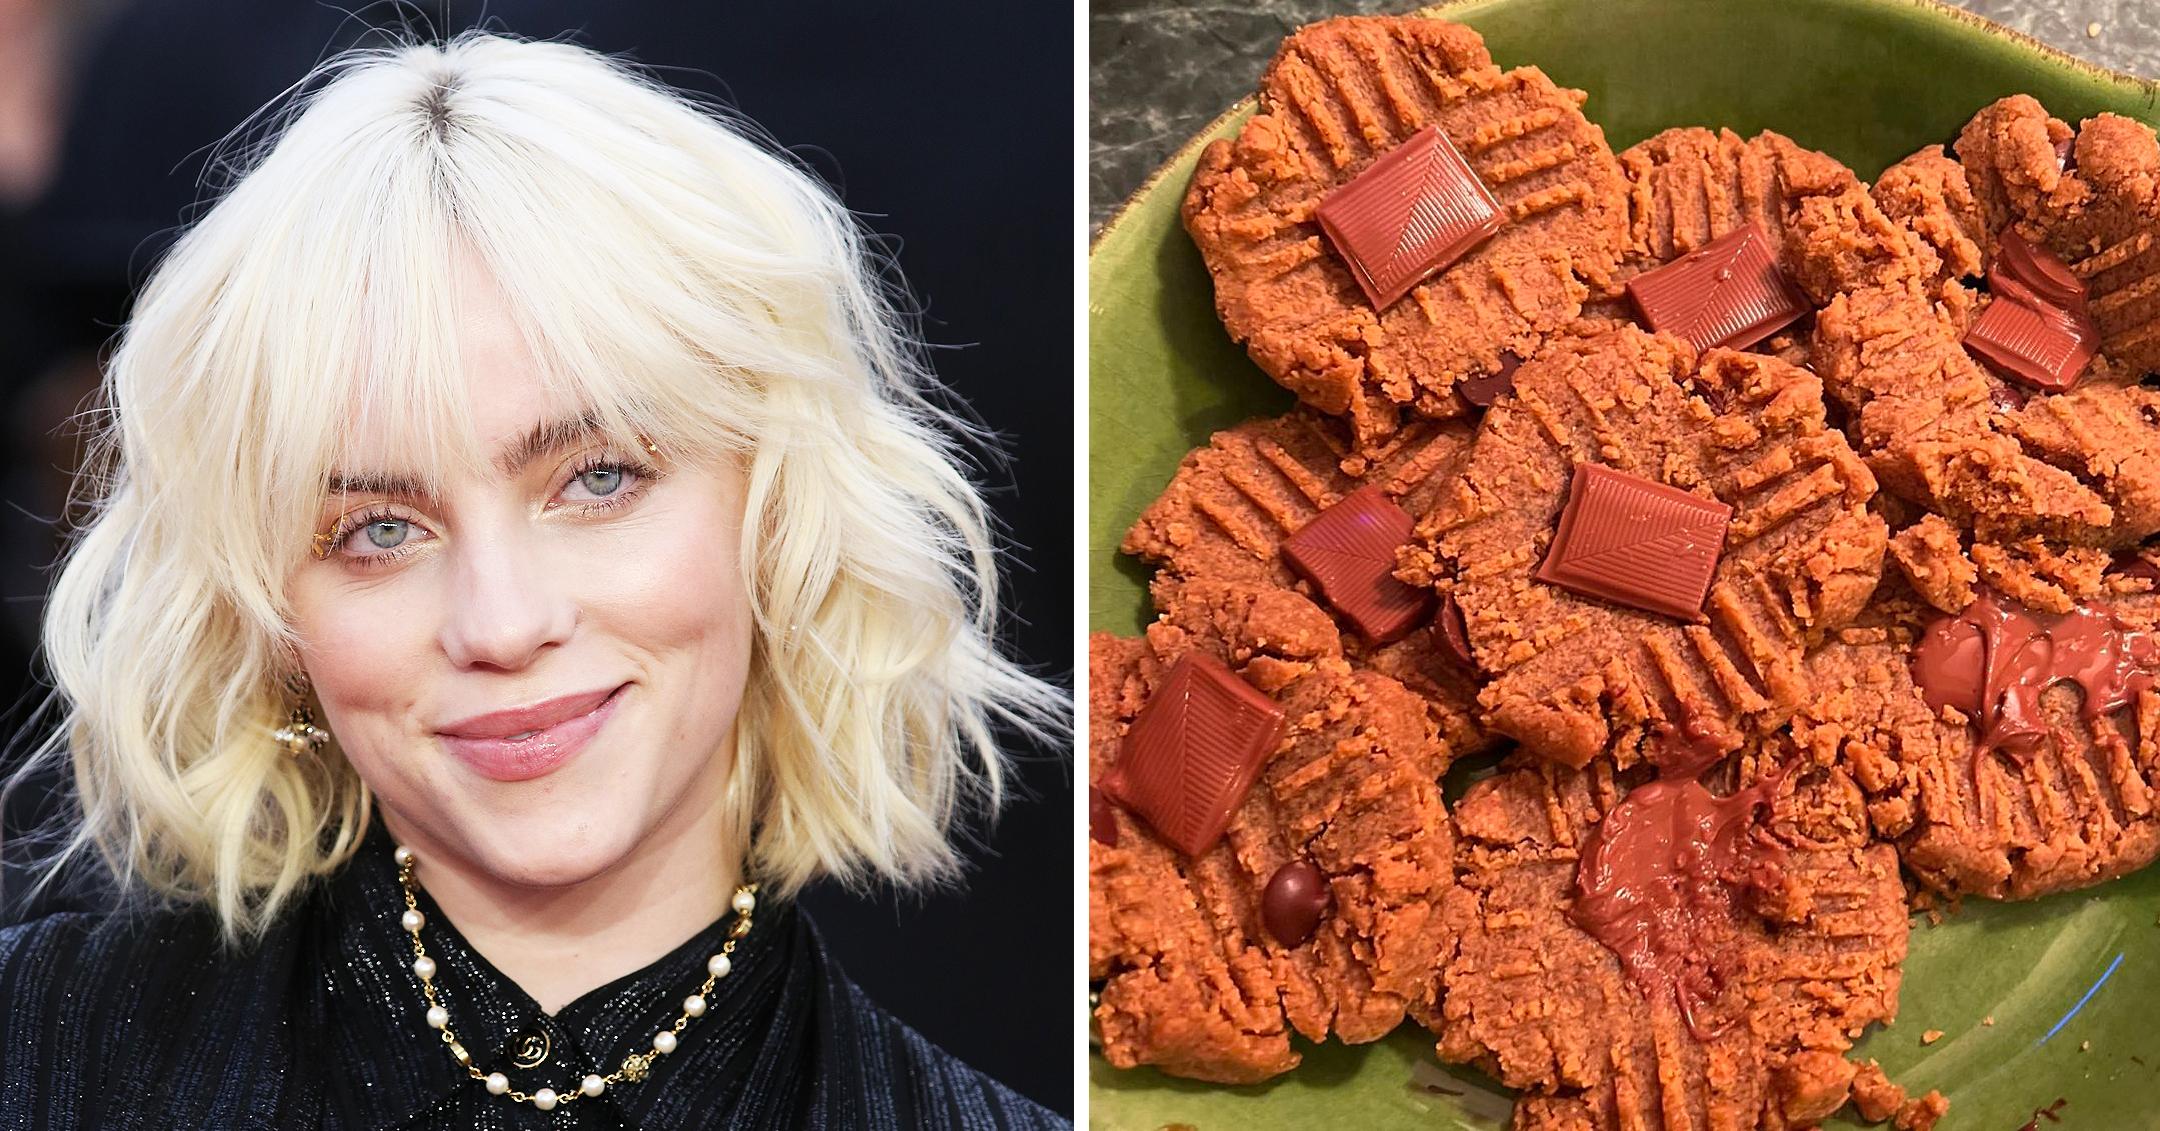 Billie Eilish Shares Vegan, GlutenFree Peanut Butter Cookie Recipe